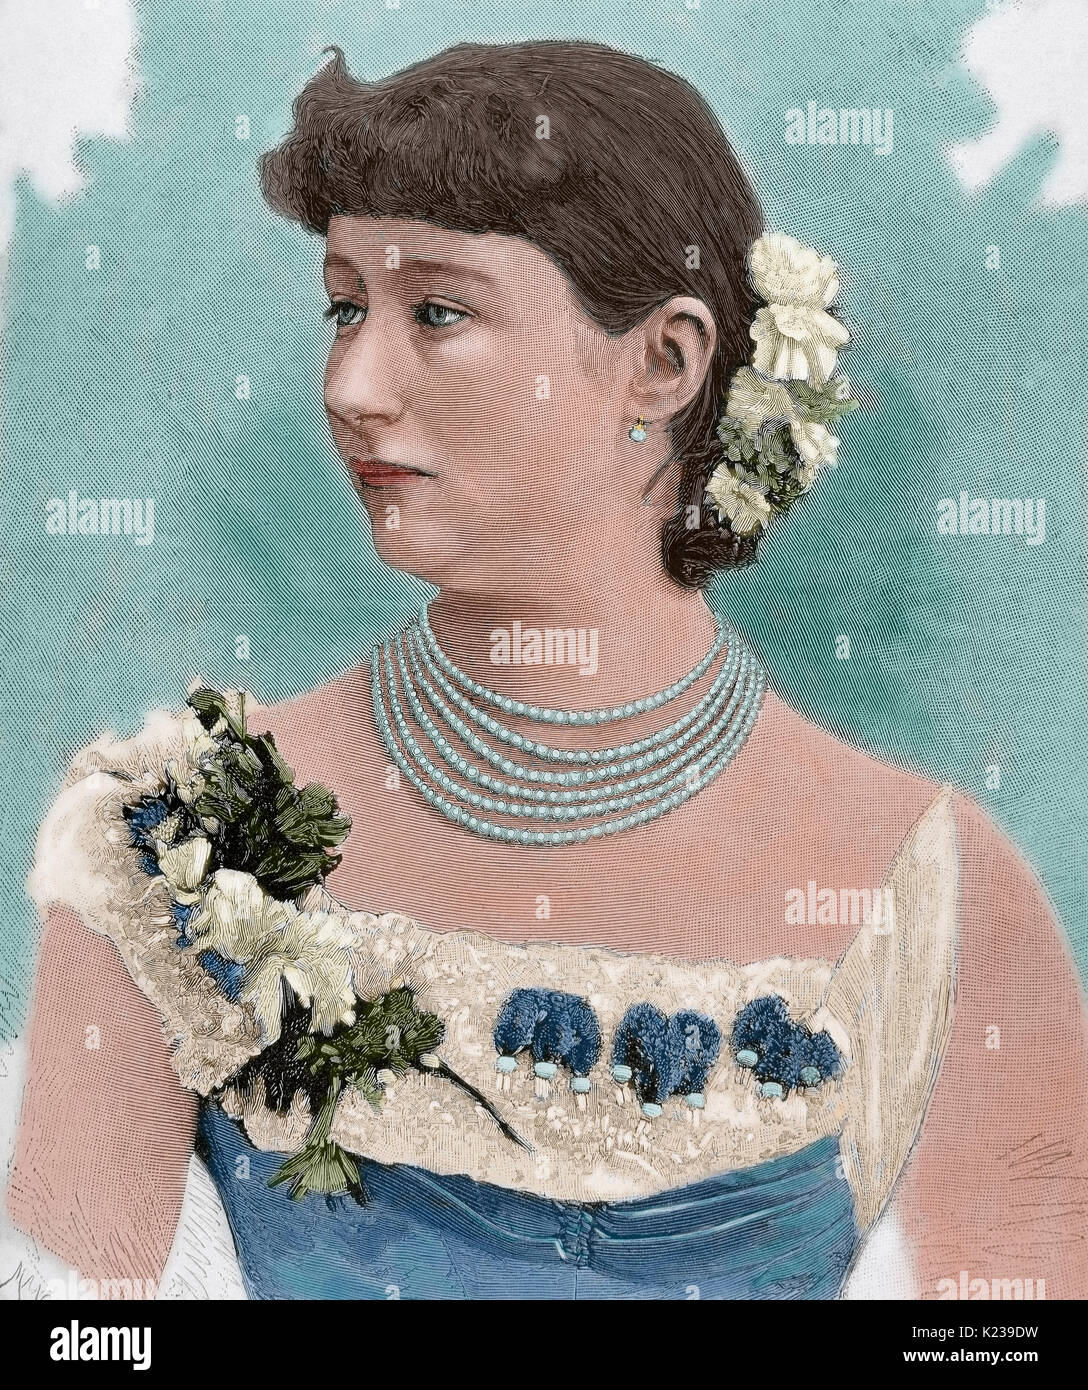 Augusta Victoria de Schleswig-Holstein (1858-1921). La dernière impératrice allemande et reine de Prusse comme la première épouse de l'empereur allemand Guillaume II (1859-1941). Portrait. Gravure par Mancastropa. De couleur. Banque D'Images